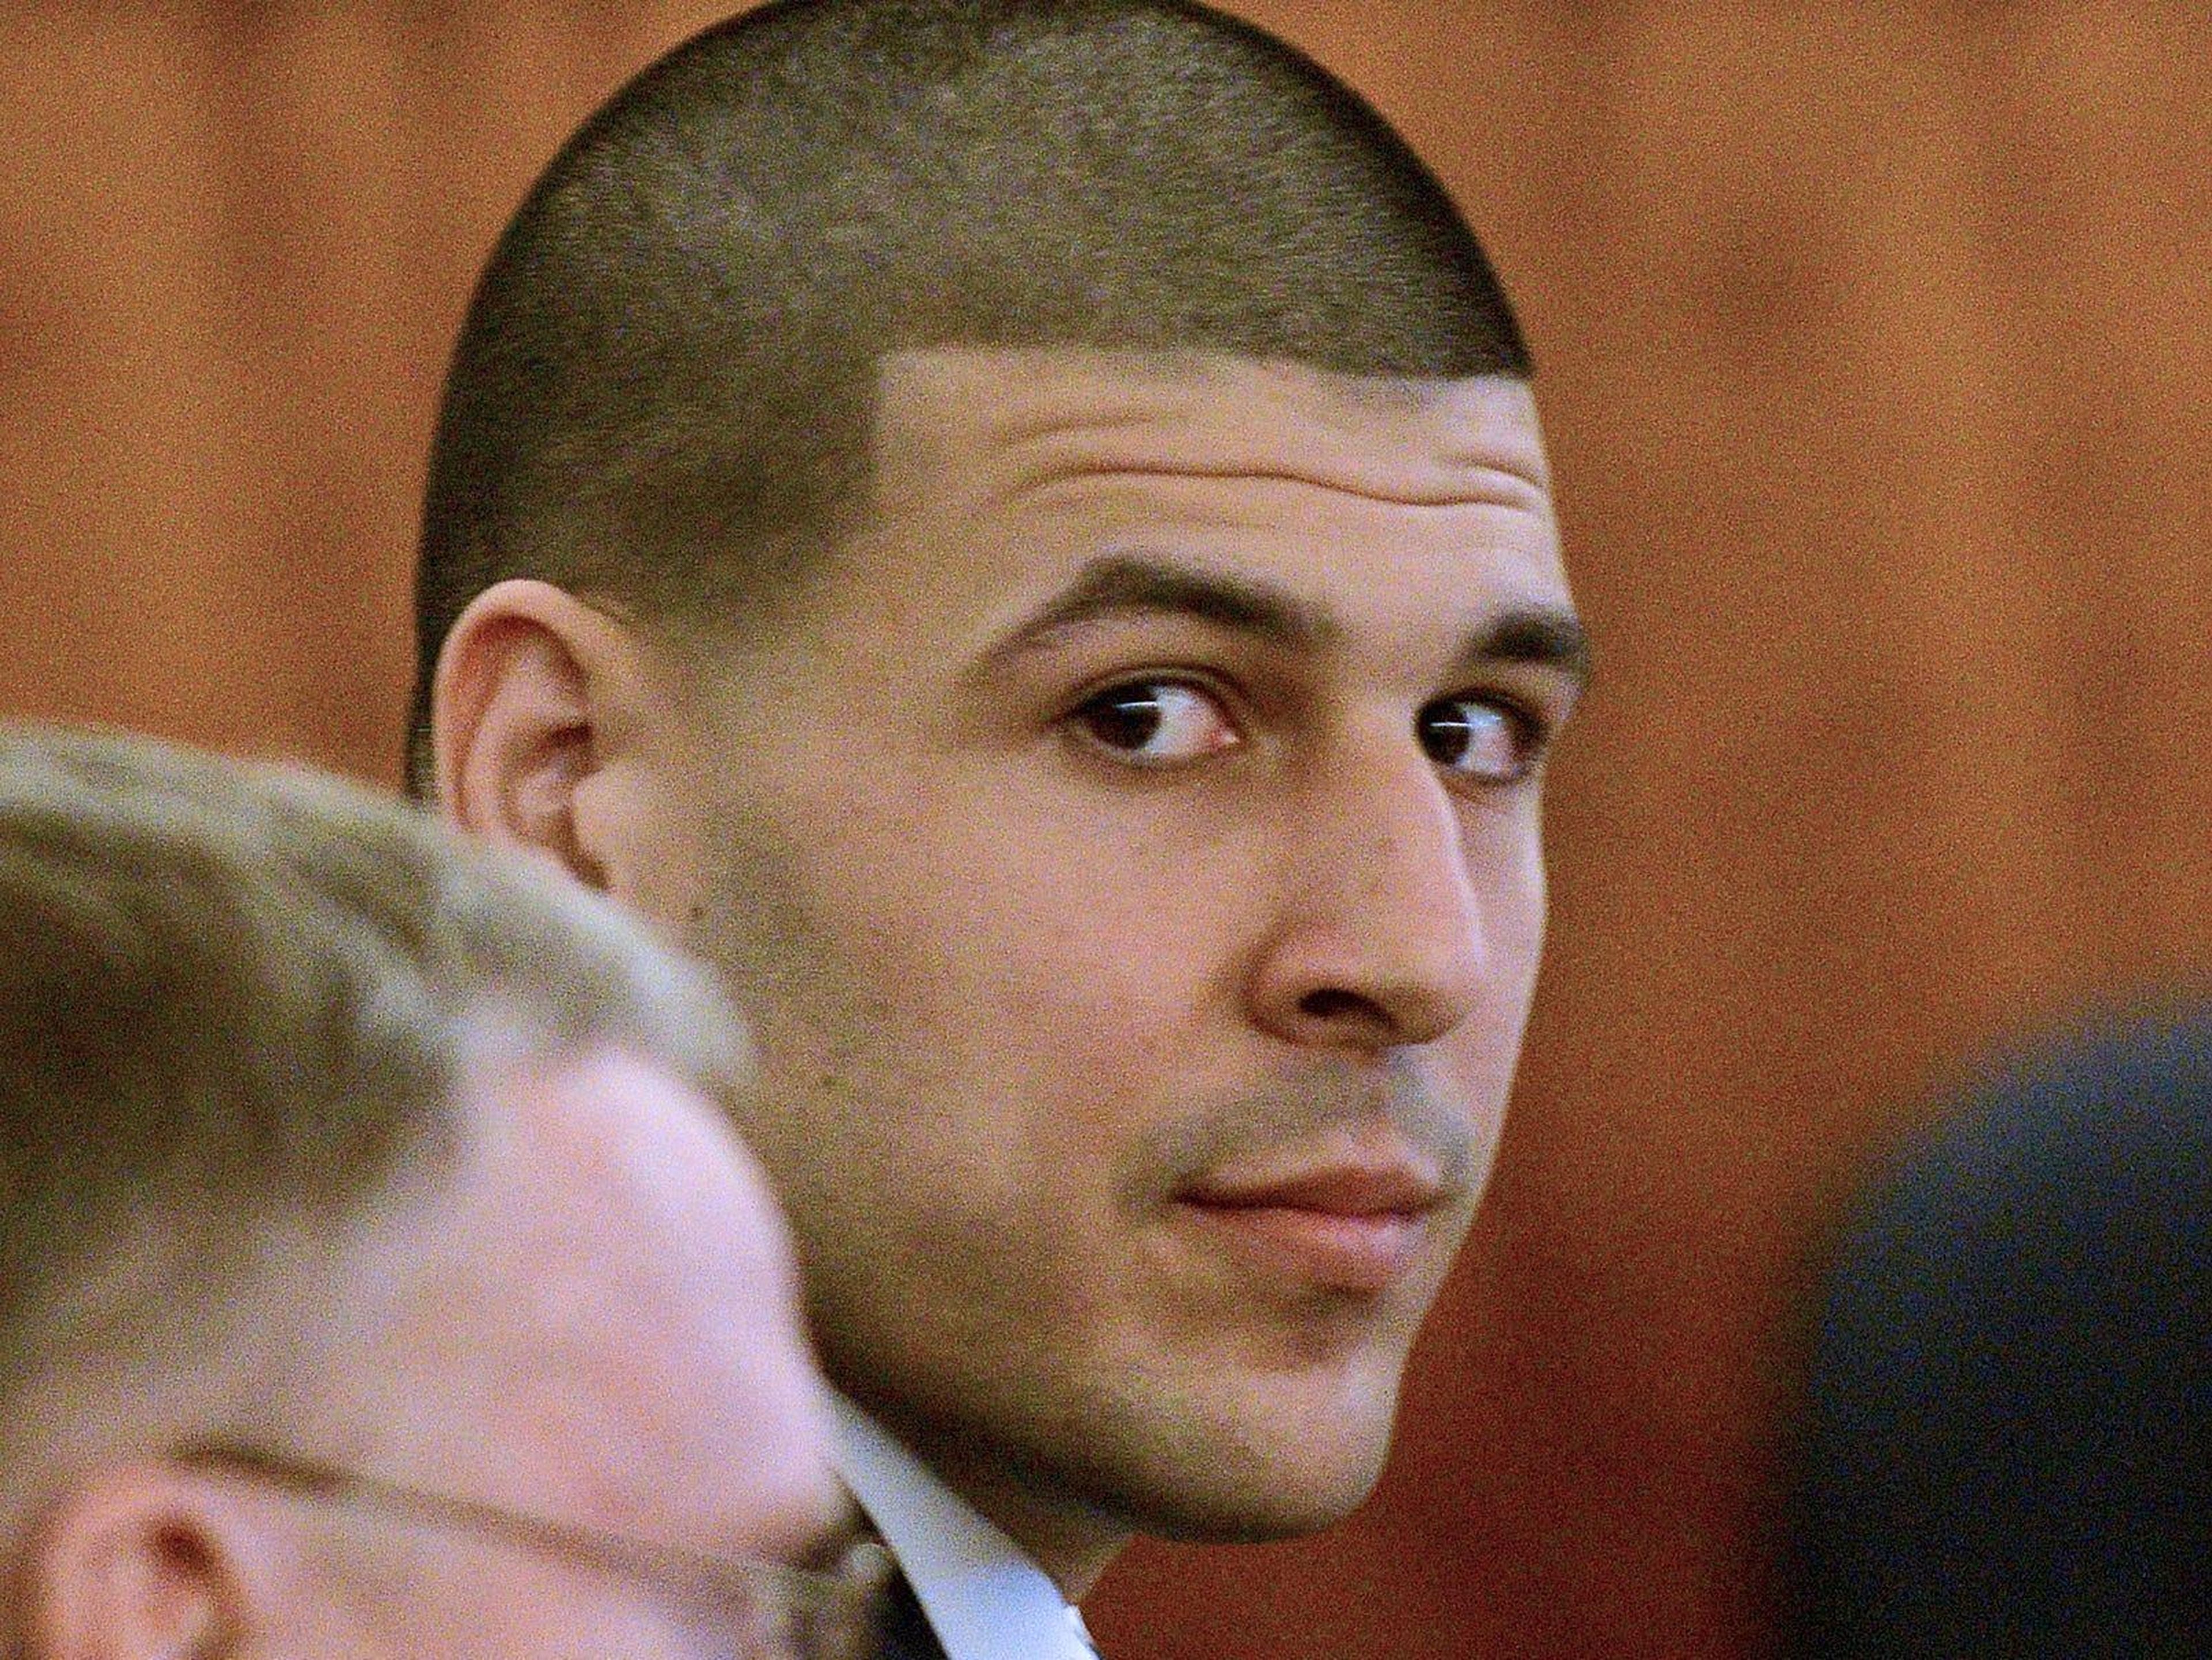 El ex jugador de fútbol americano de los New England Patriots, Aaron Hernandez, mira hacia el área de los medios de comunicación durante su juicio en Fall River, Massachusetts, el lunes 6 de abril de 2015.